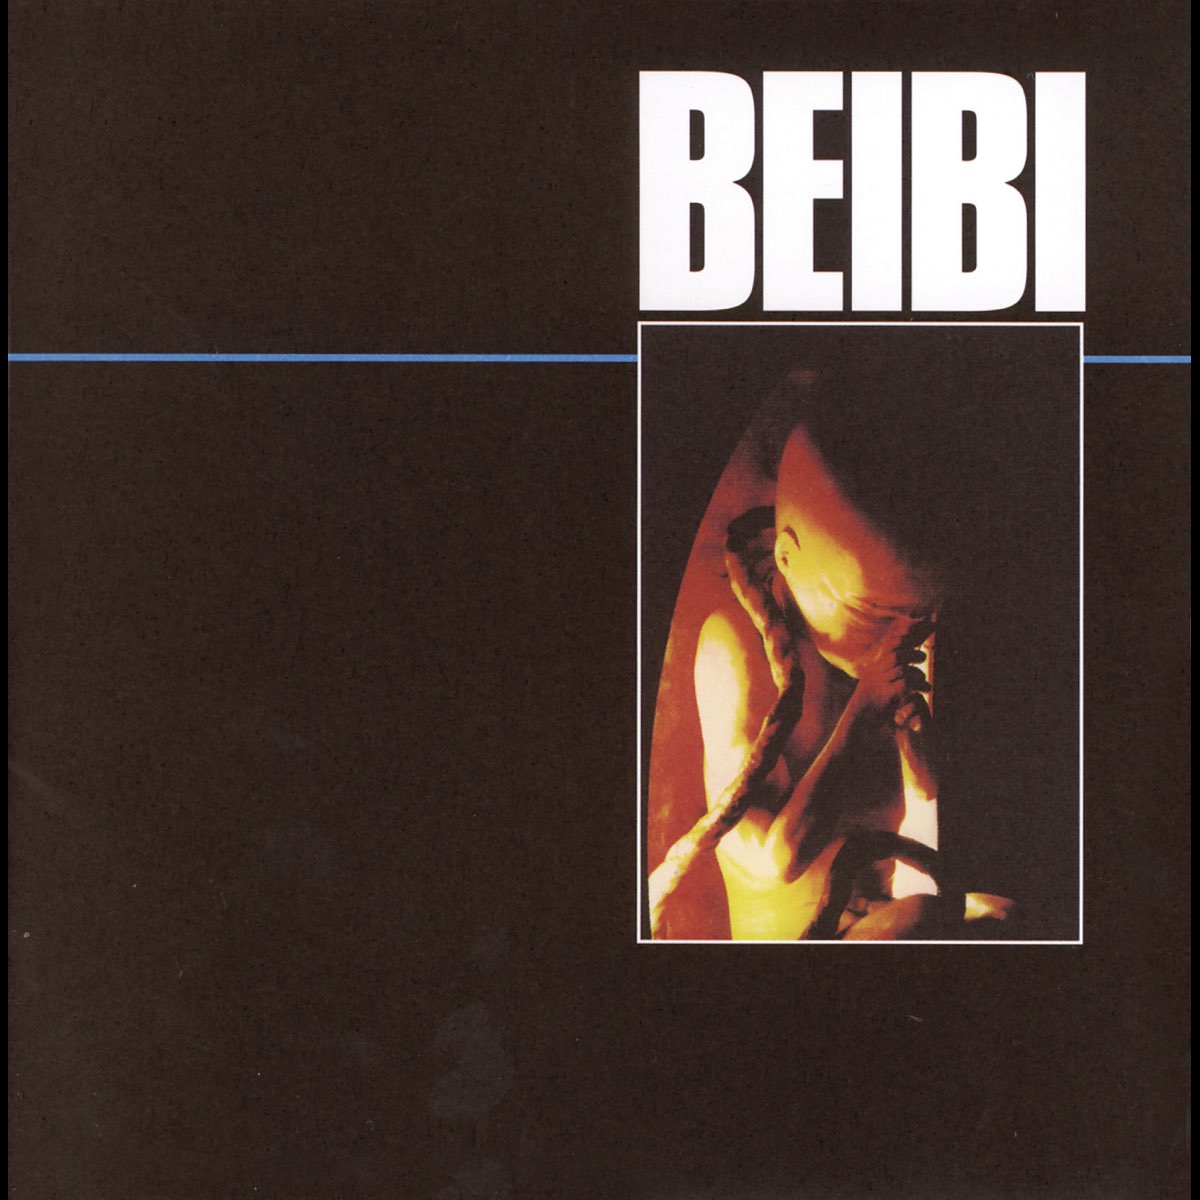 Beibi - Album by Veltto Virtanen - Apple Music